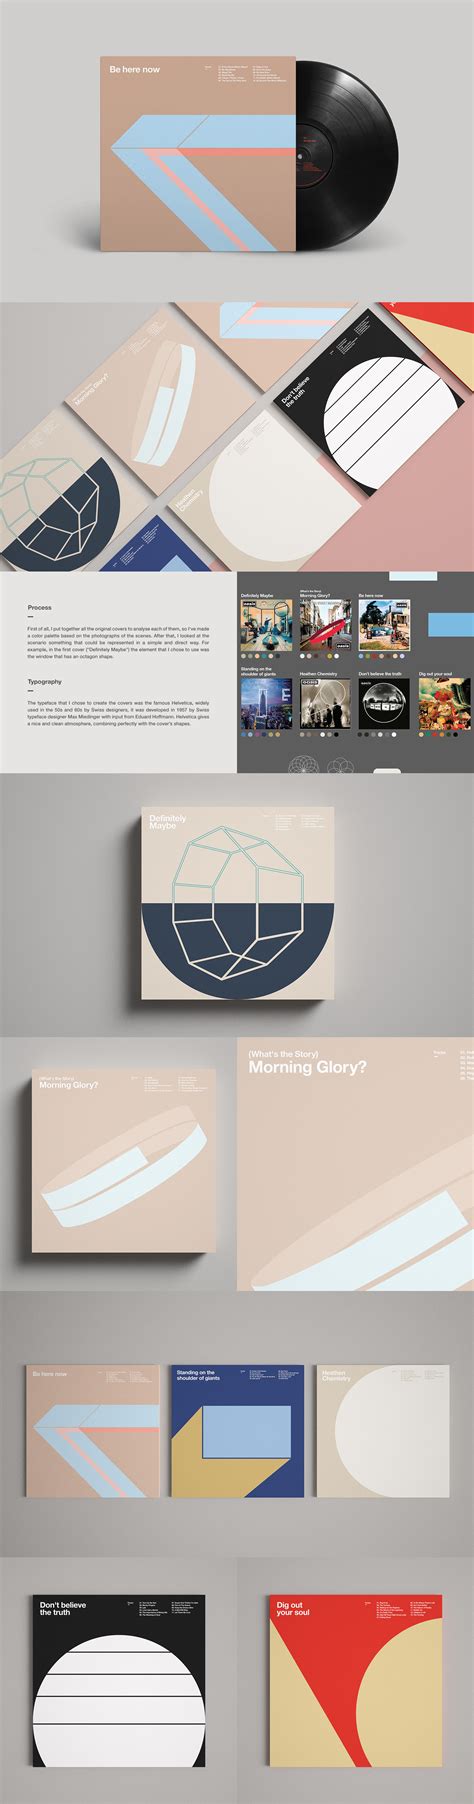 Oasis Graphic Album Covers On Behance Music Album Design